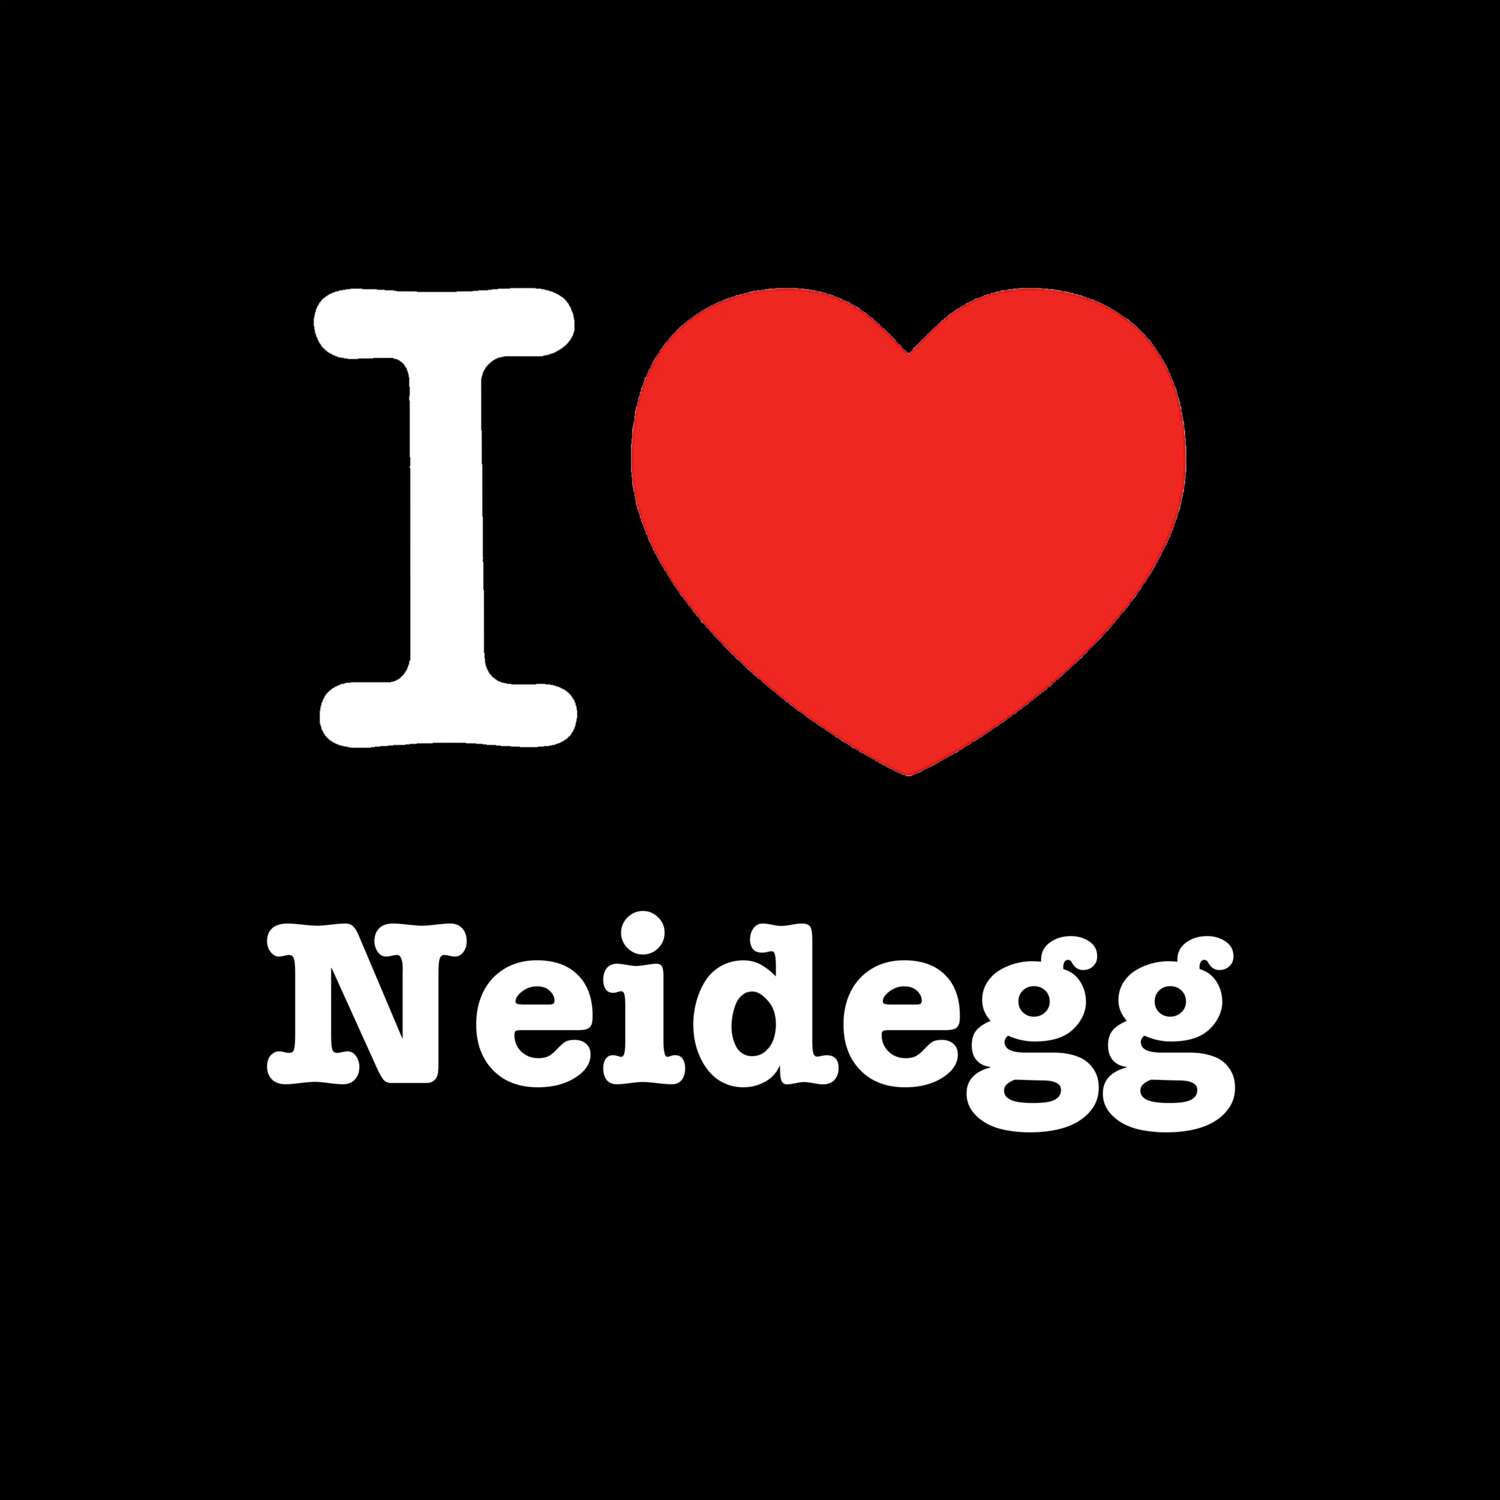 Neidegg T-Shirt »I love«